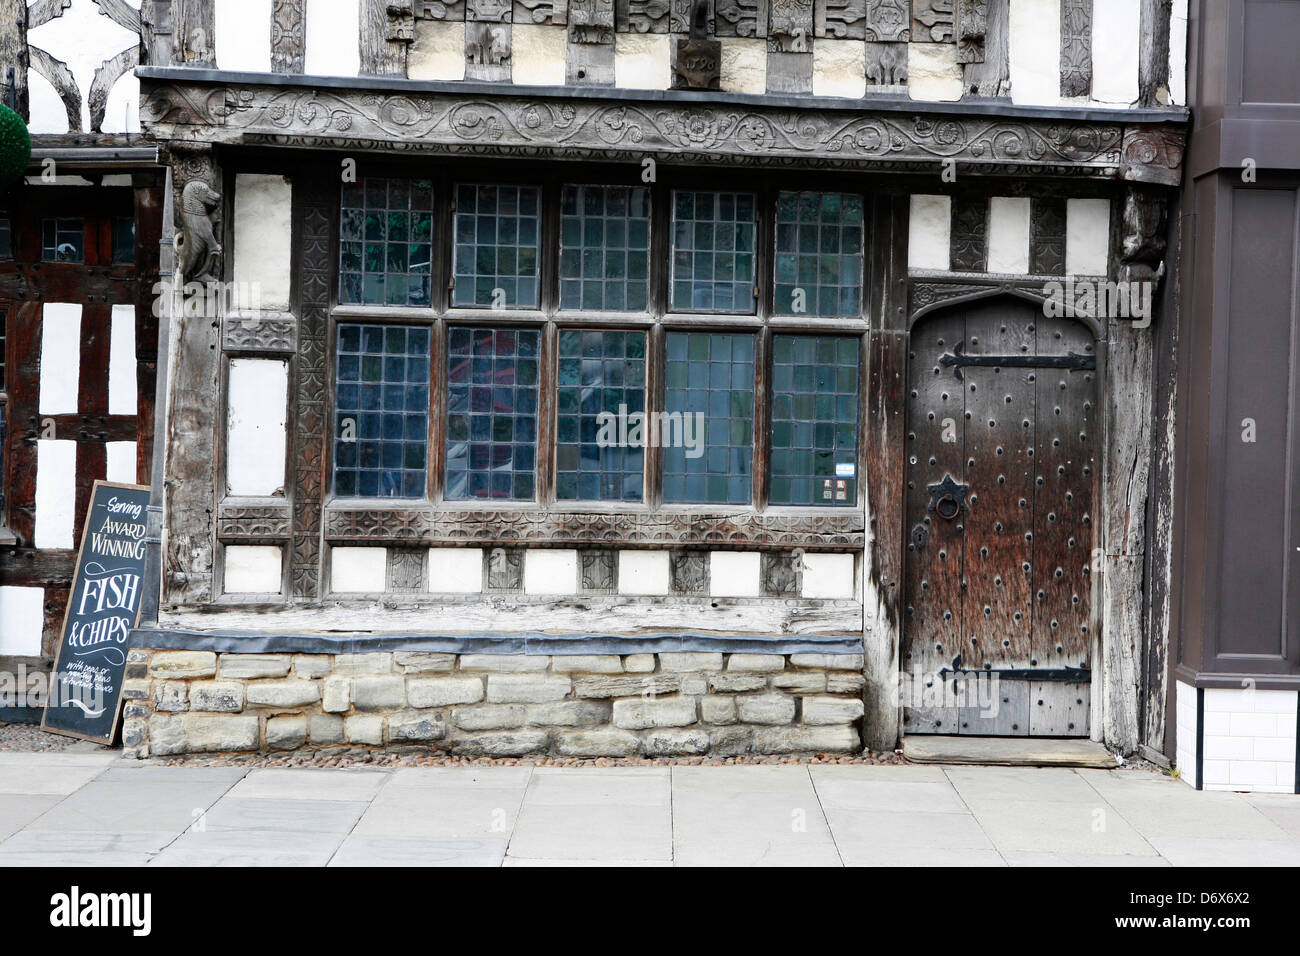 Vieux bâtiment en bois avec des poutres apparentes en chêne Stratford Upon Avon. Banque D'Images